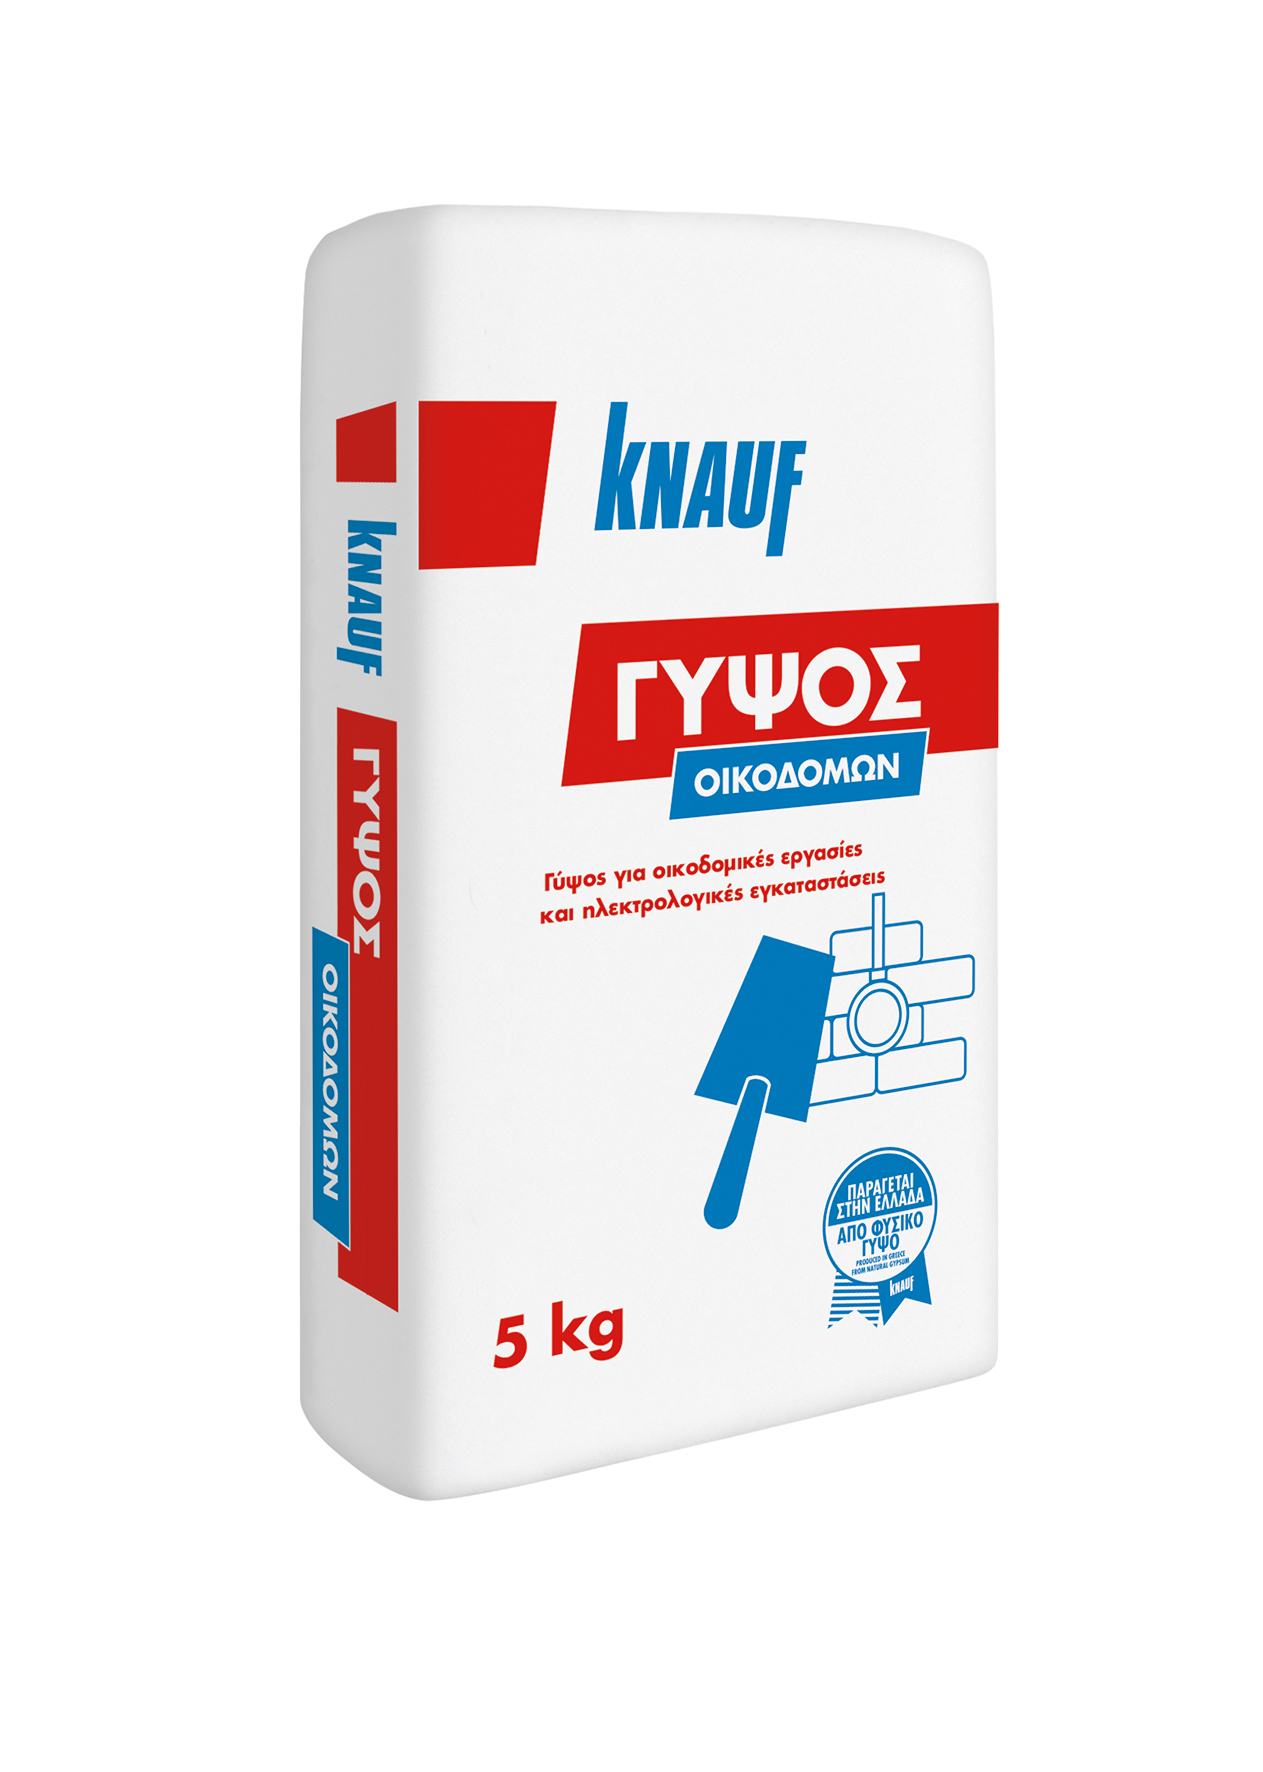 Knauf Building Gypsum 5kg